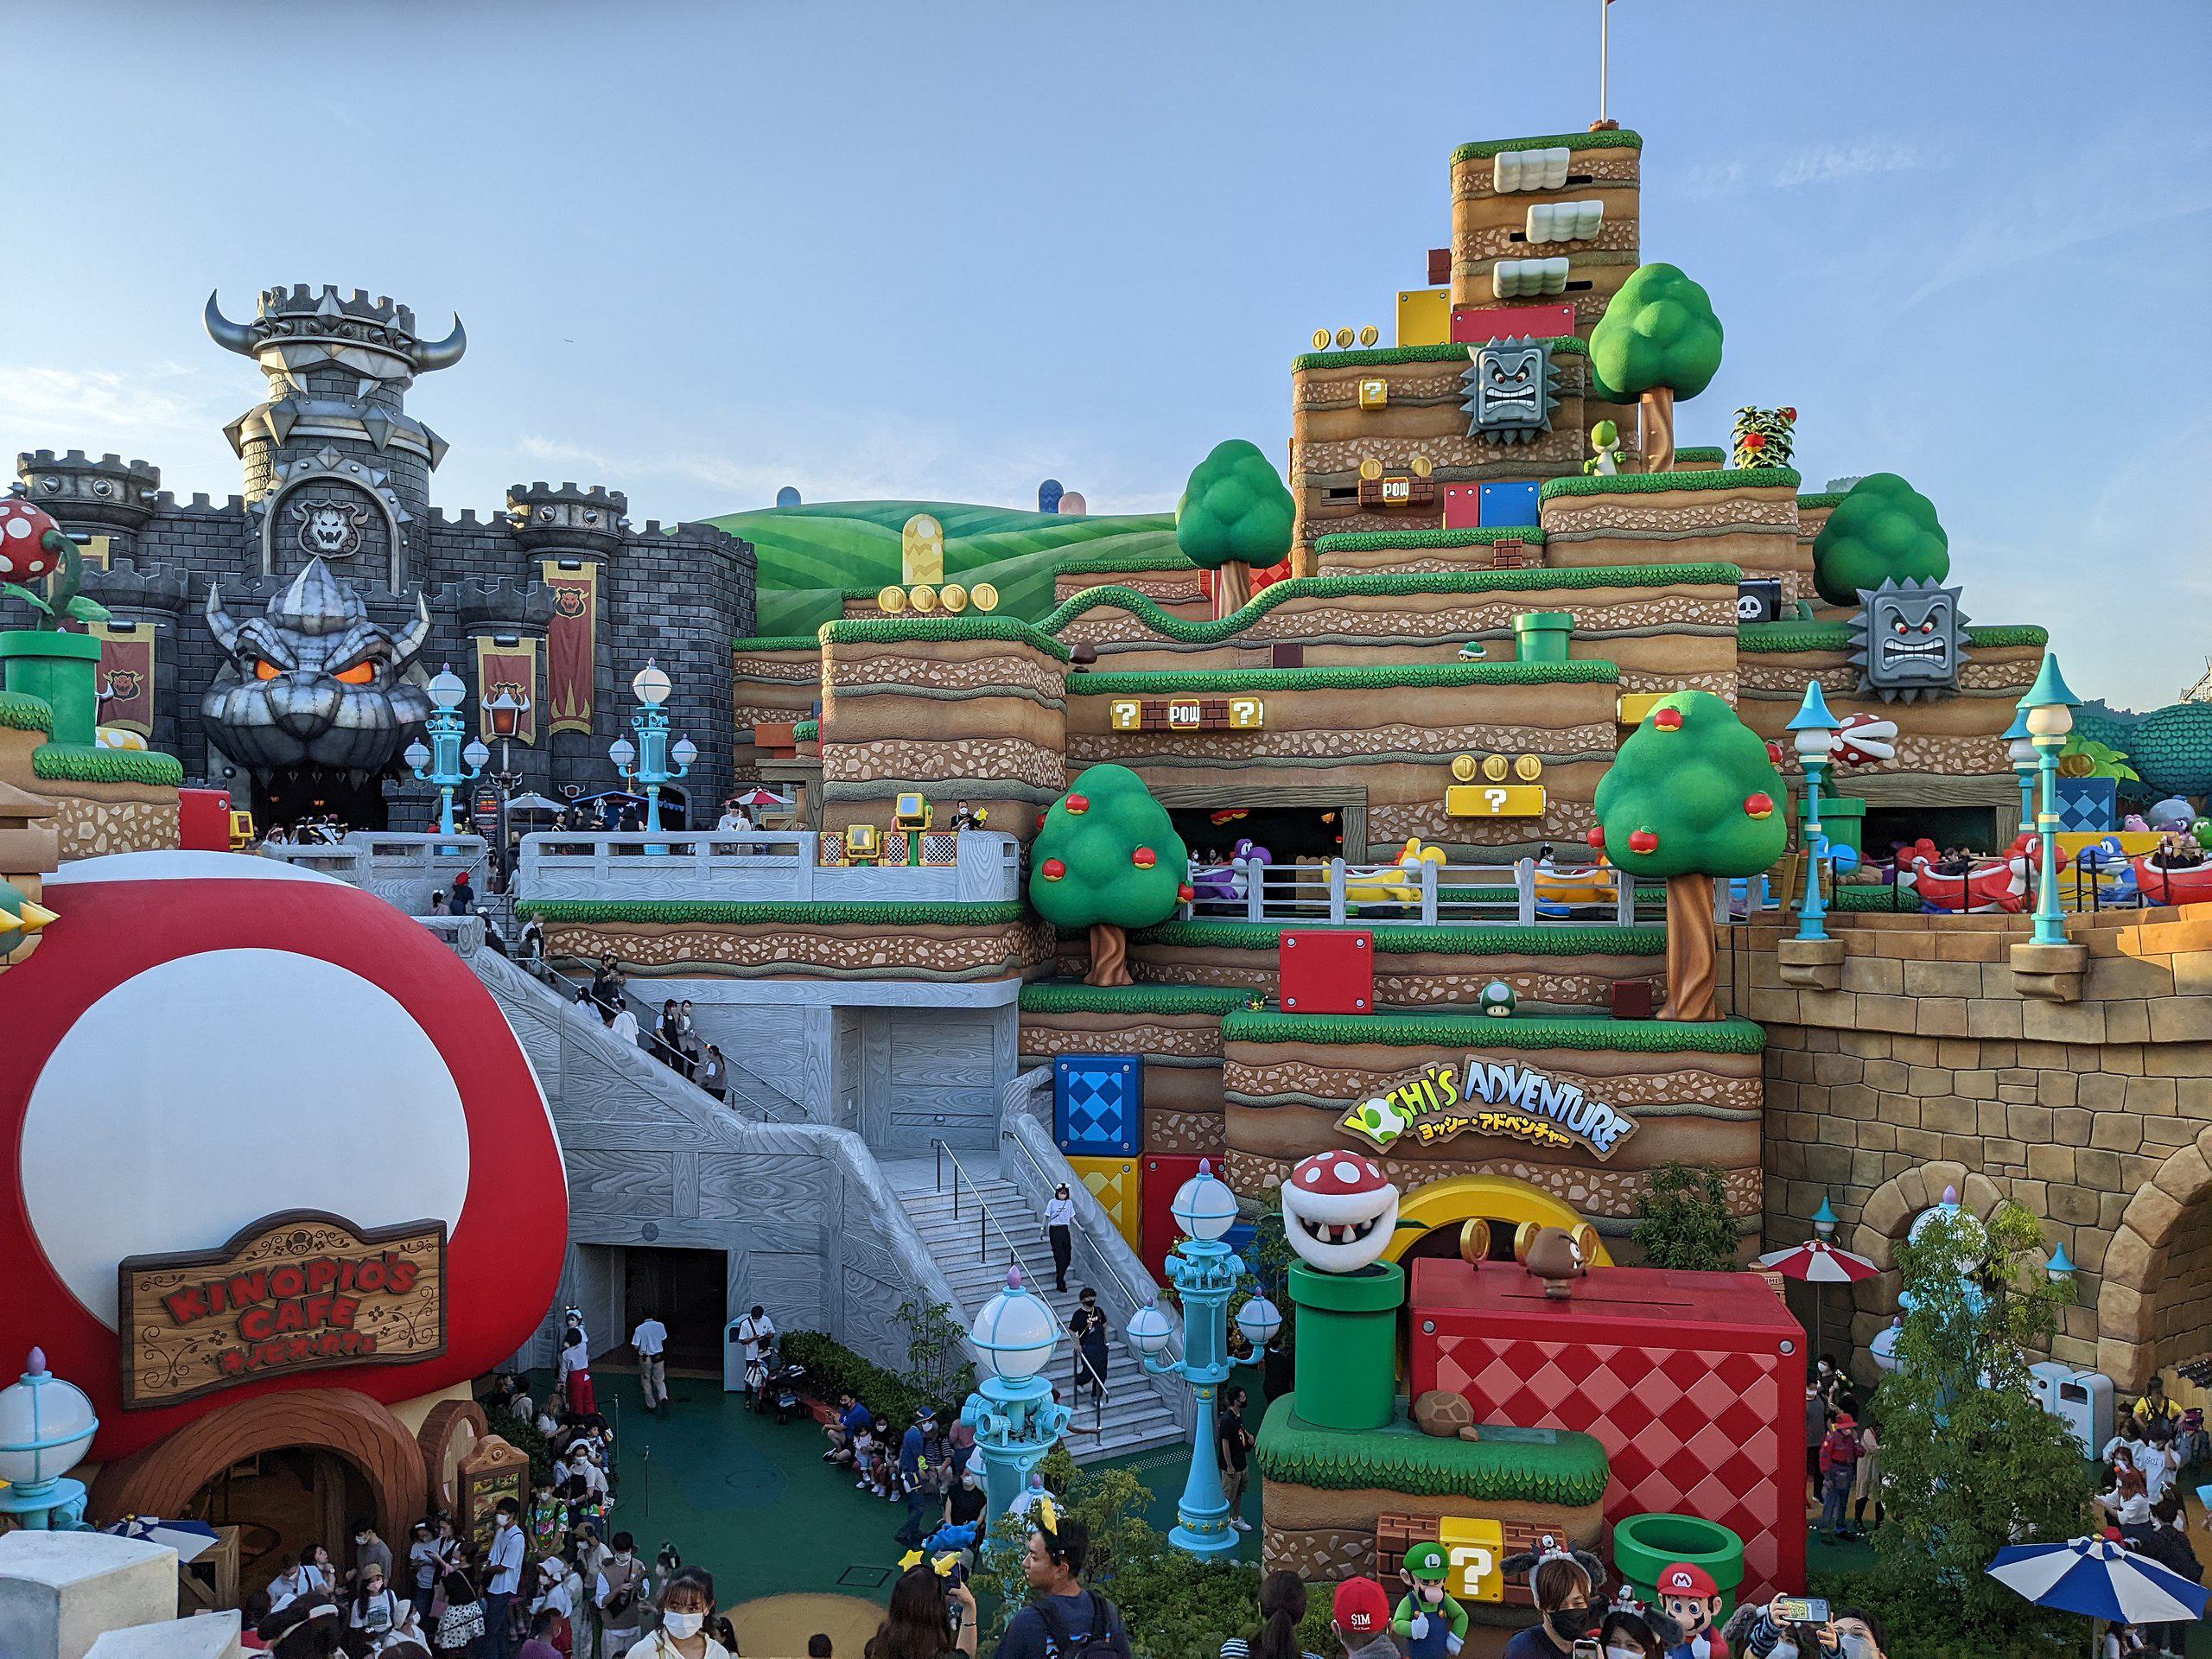 Theme parks around the world to explore from Dubai - Universal Studios, Japan